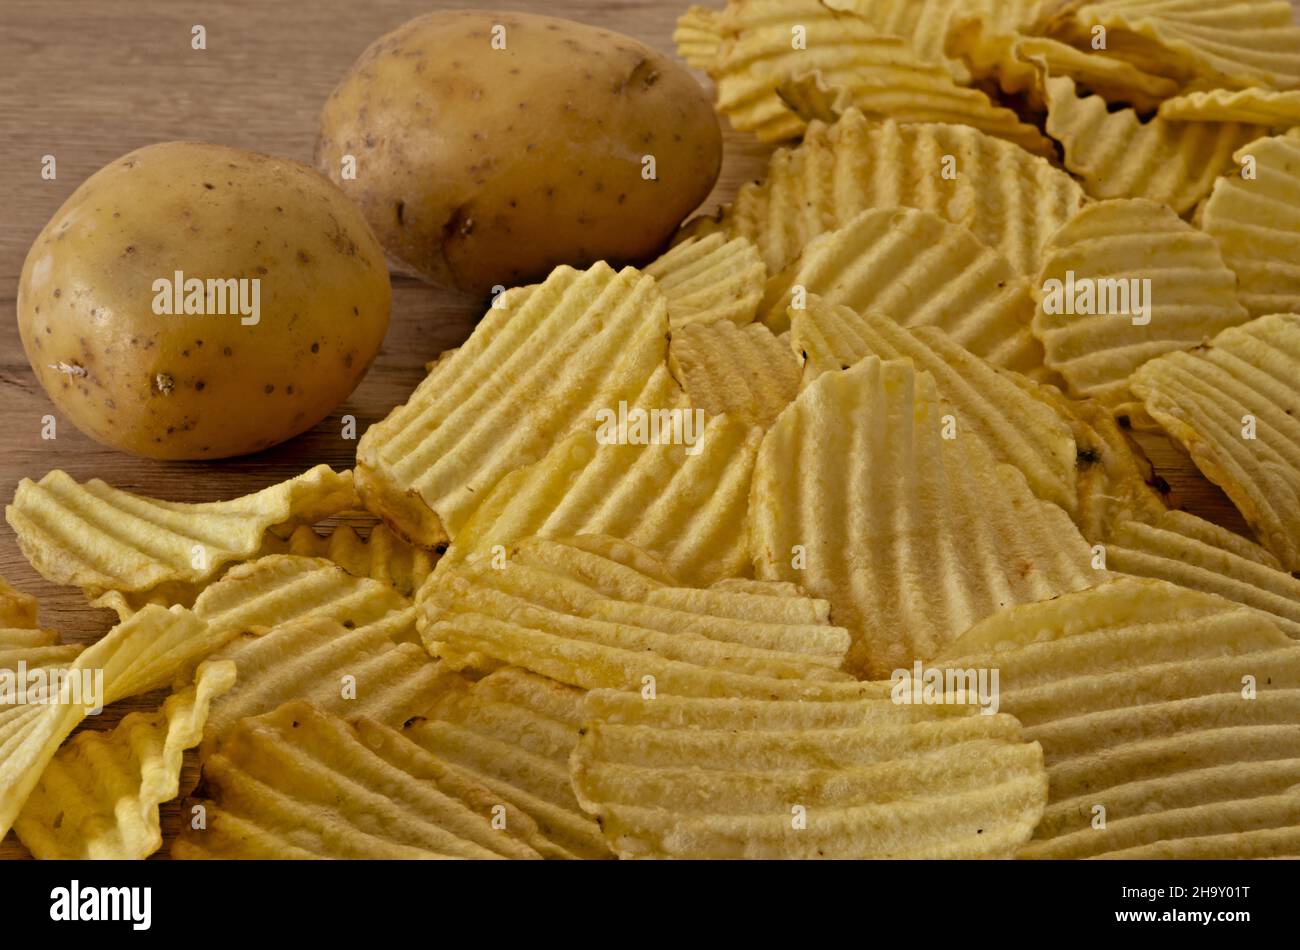 patate - patate fritte sul tavolo primo piano con patate fresche altra vista Banque D'Images